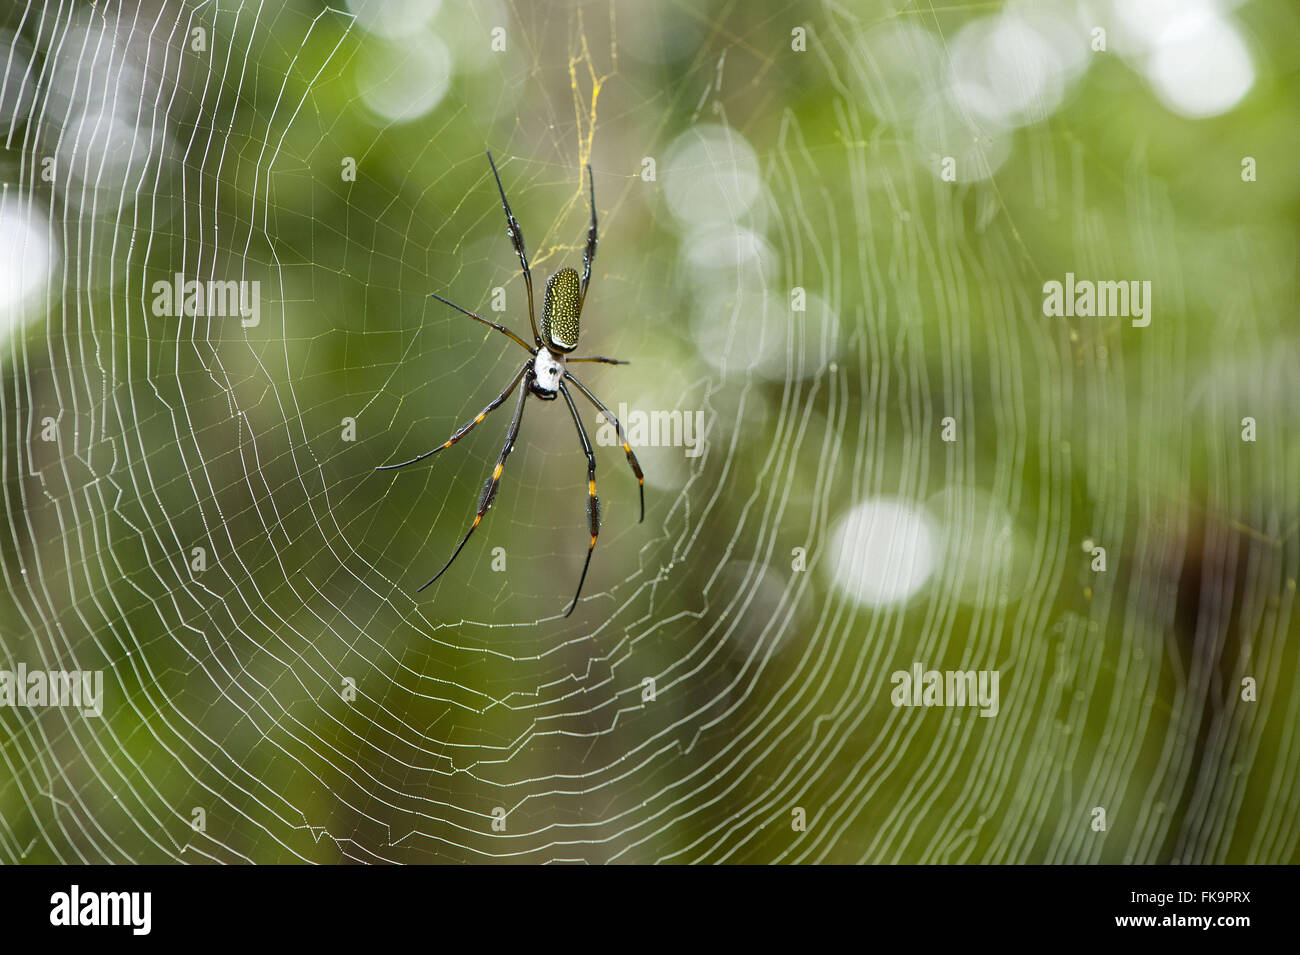 Spider in web - Nephilengys cruentata Stock Photo